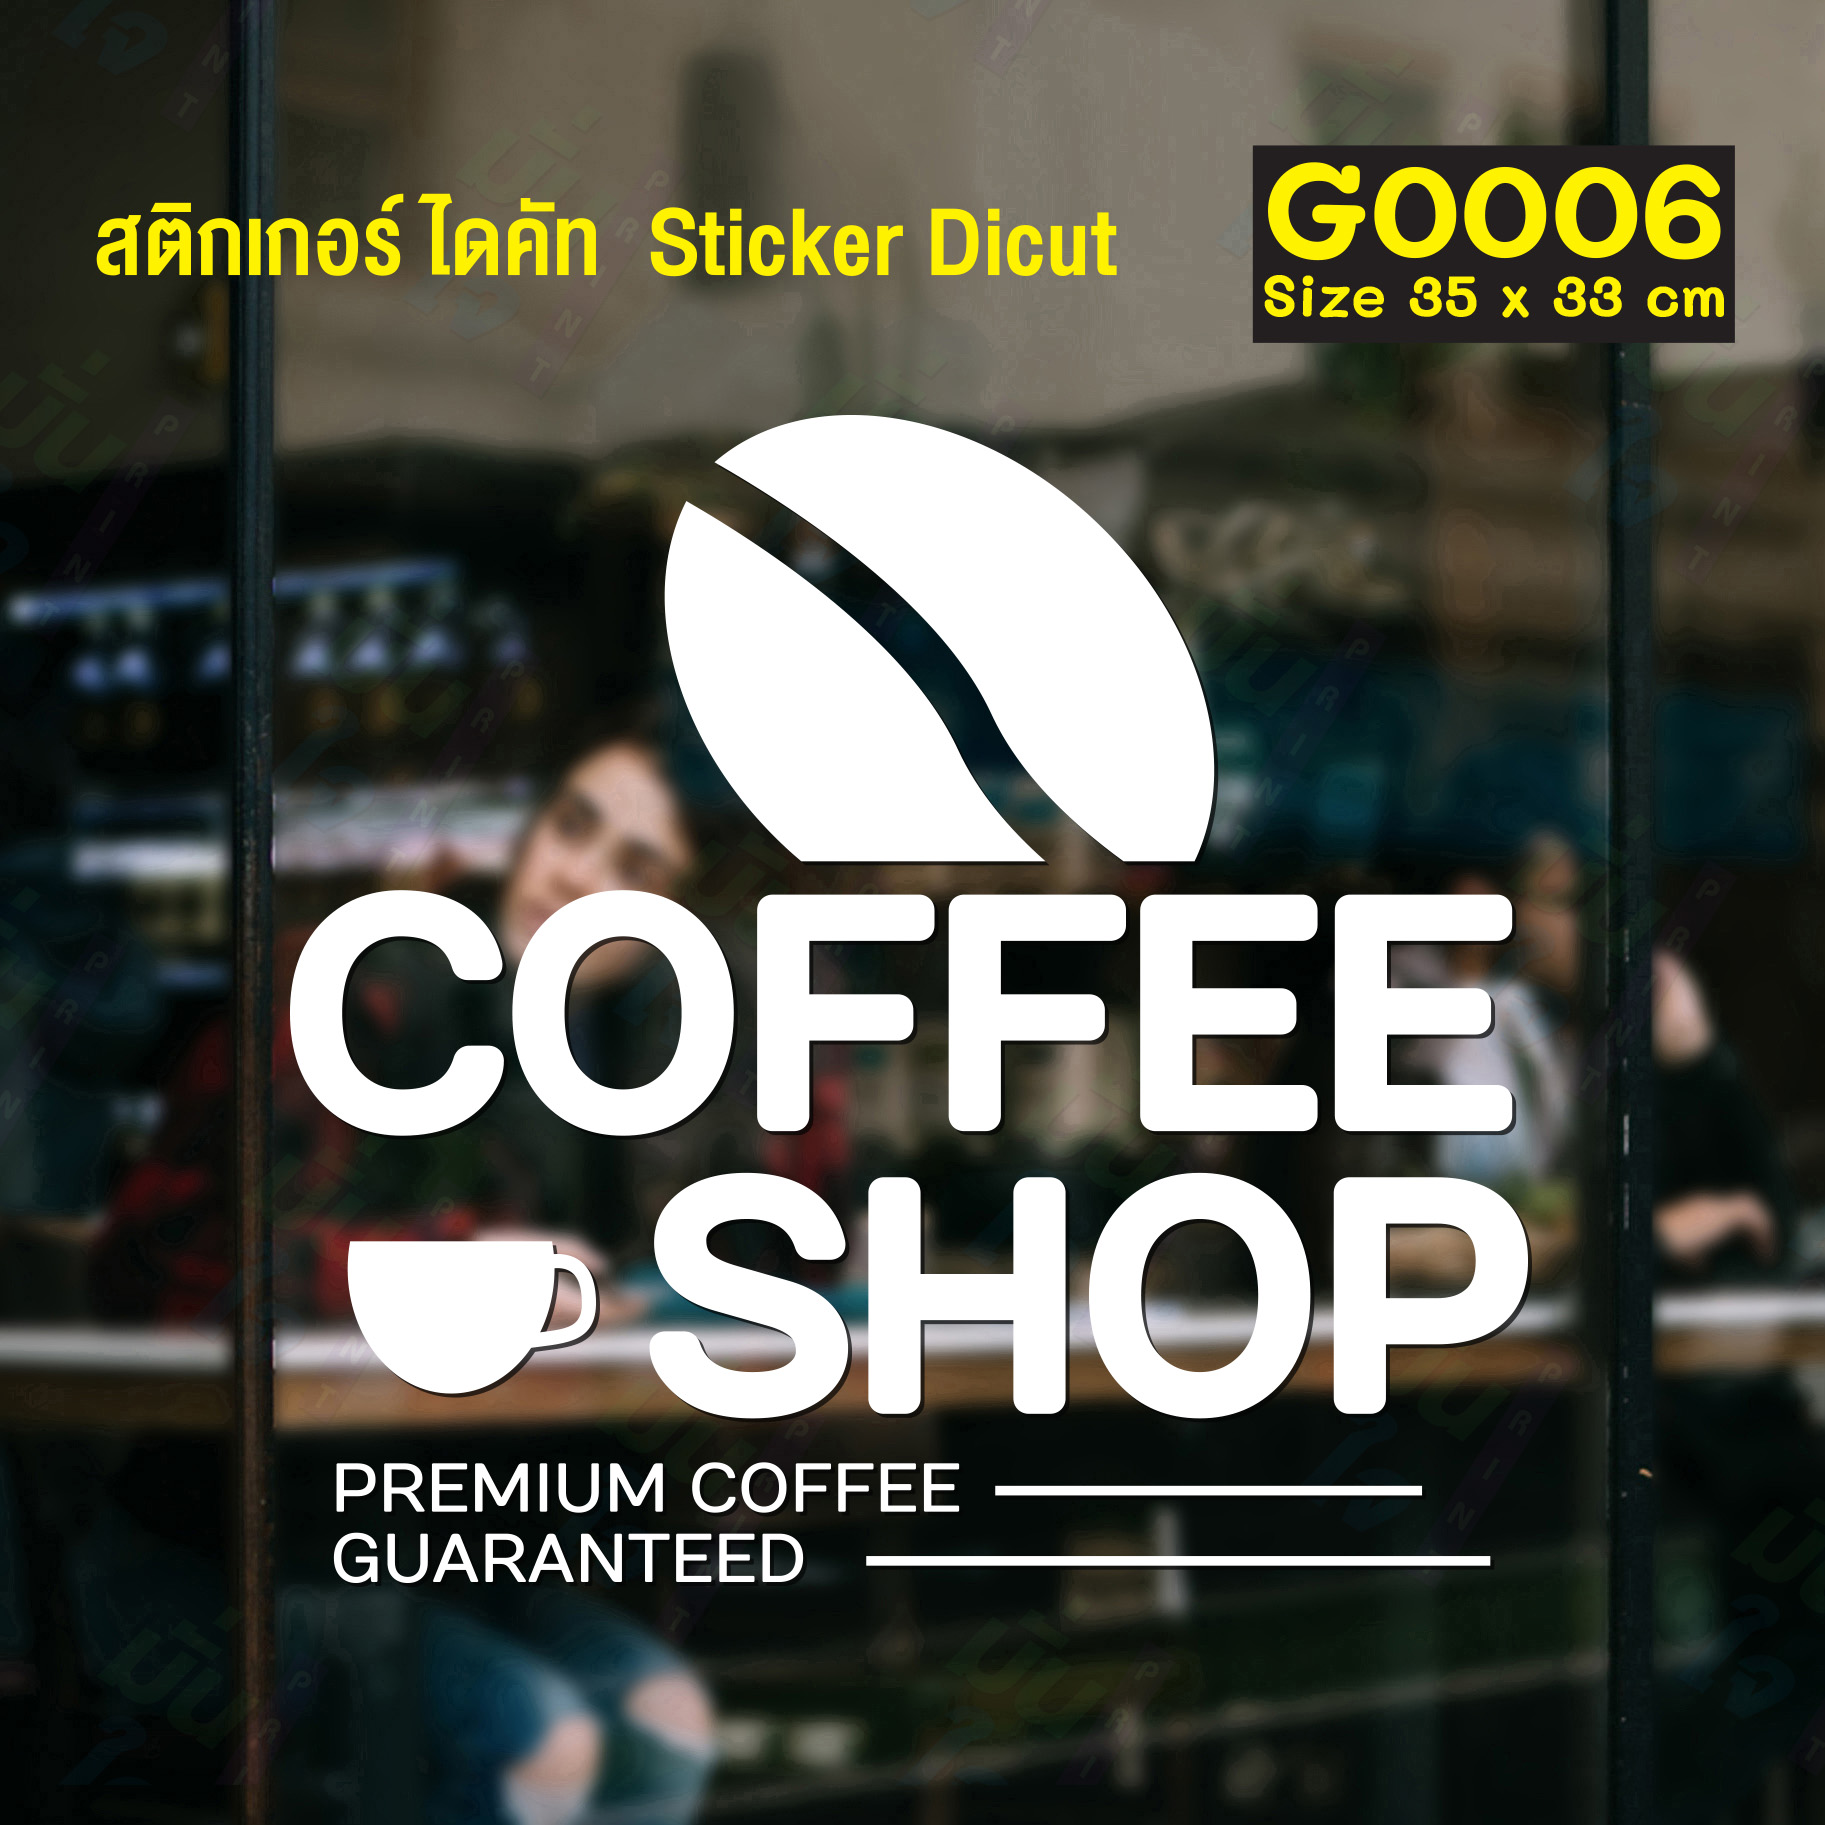 สติ๊กเกอร์ติดกระจก สติกเกอร์ร้านกาแฟ coffee shop Size 35 x 33 cm.(G0006) สี ดำ